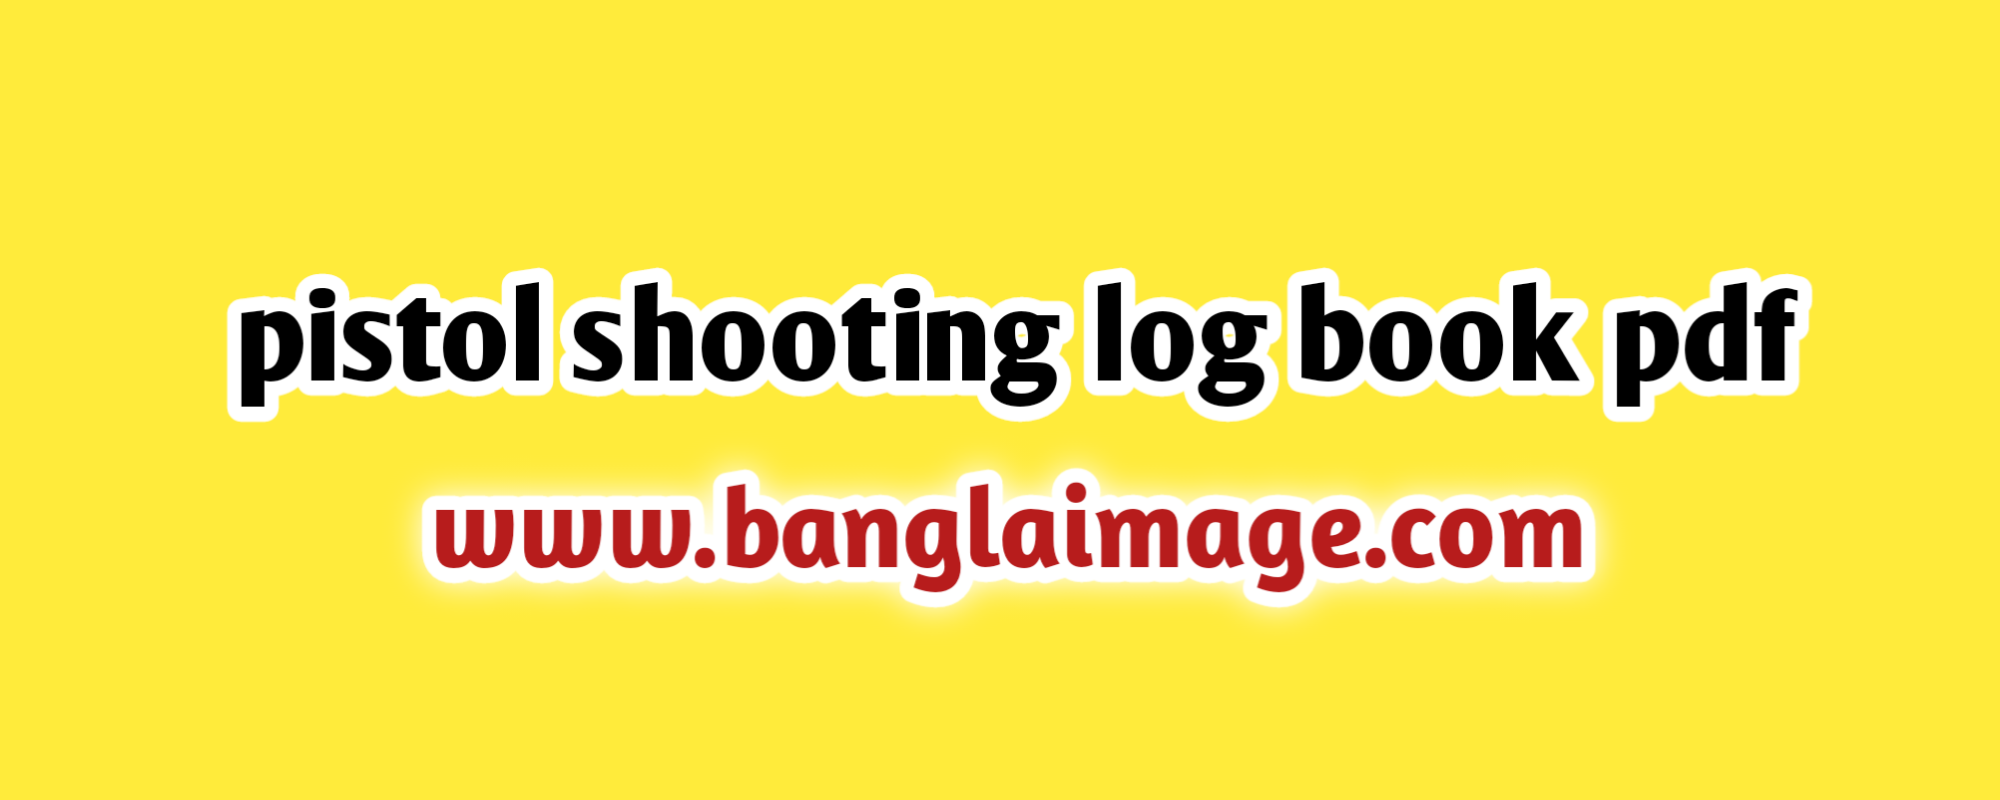 pistol shooting log book pdf, pistol shooting log book pdf now, pistol shooting log book pdf download , the pistol shooting log book pdf now